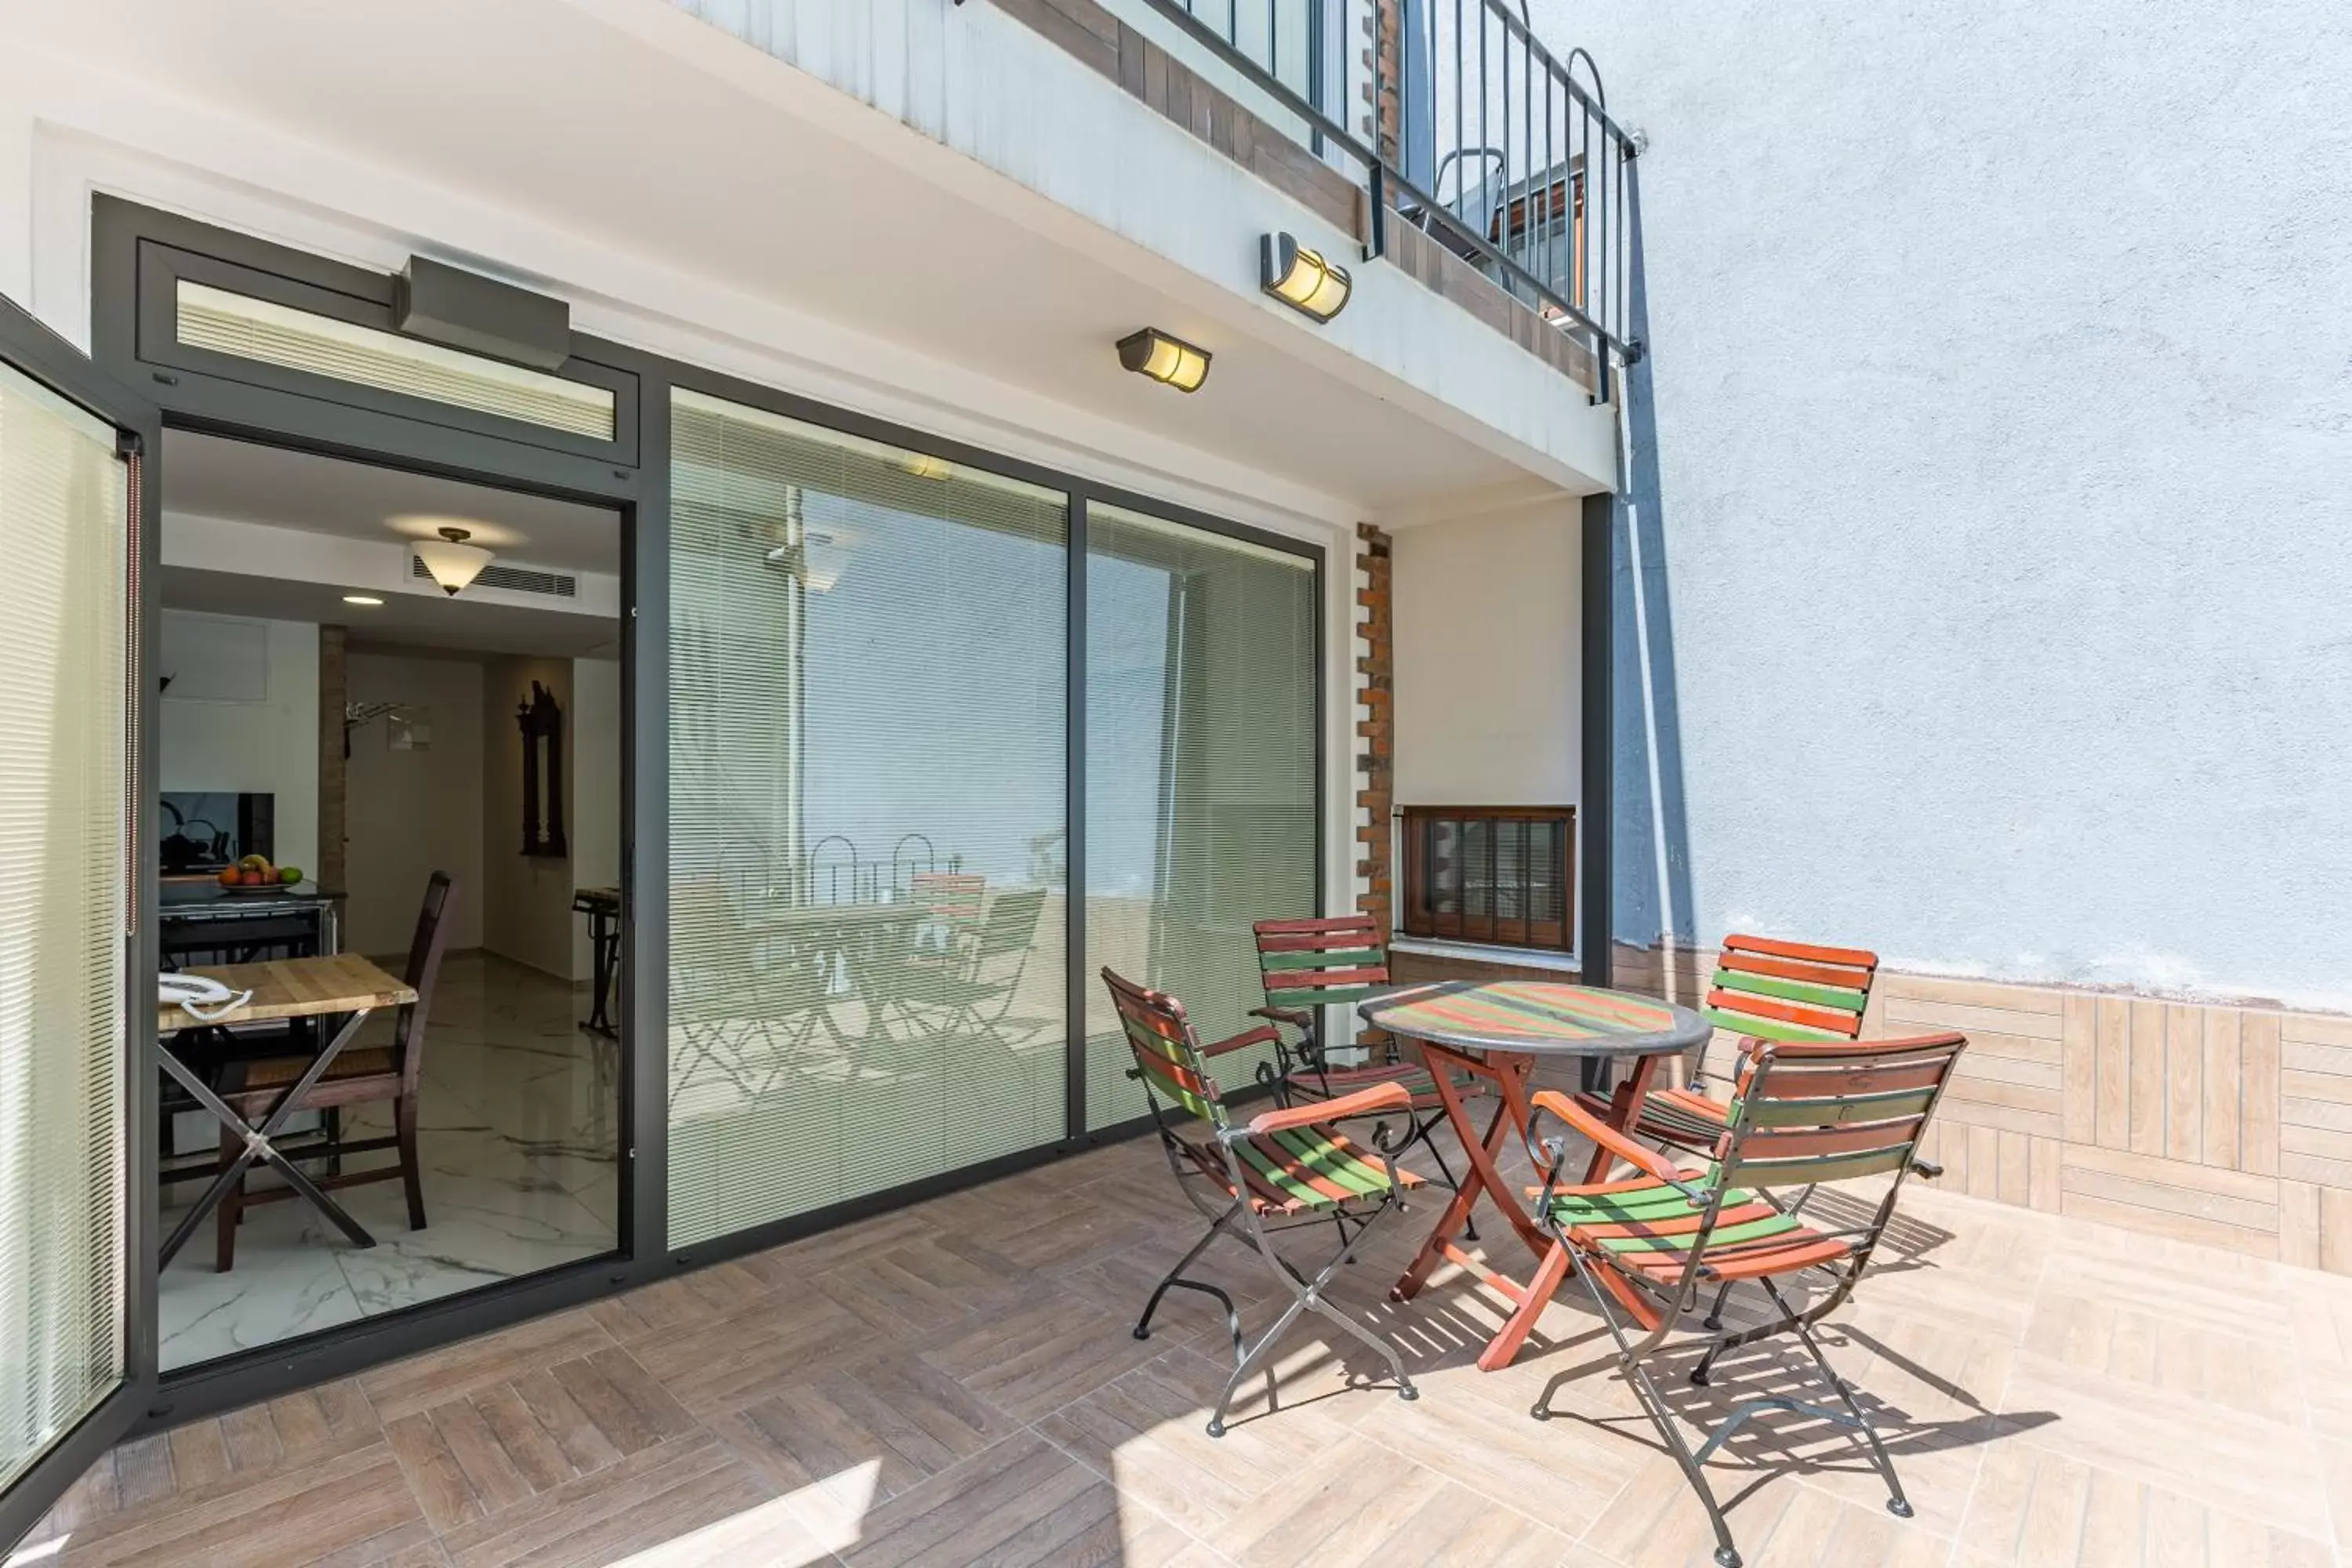 Balcony/Terrace, Patio/Outdoor Area in Villa Pera Suite Hotel